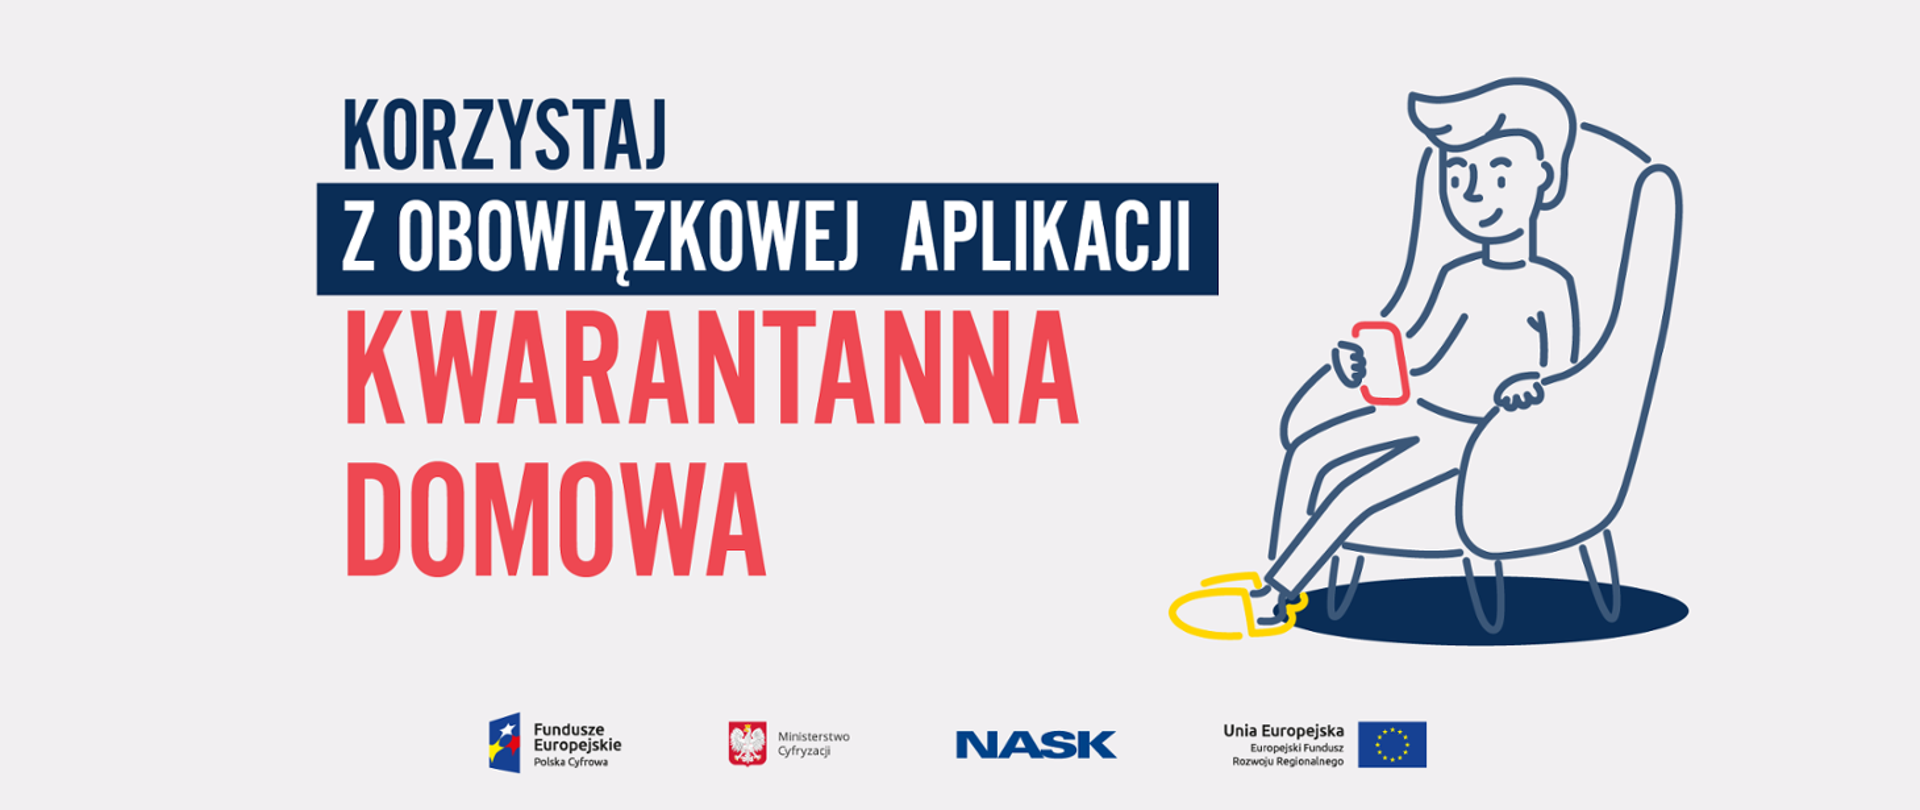 Pamiętaj o pobraniu aplikacji „Kwarantanna domowa”– to Twój obowiązek  podczas odbywania kwarantanny - Koronawirus: informacje i zalecenia -  Portal Gov.pl